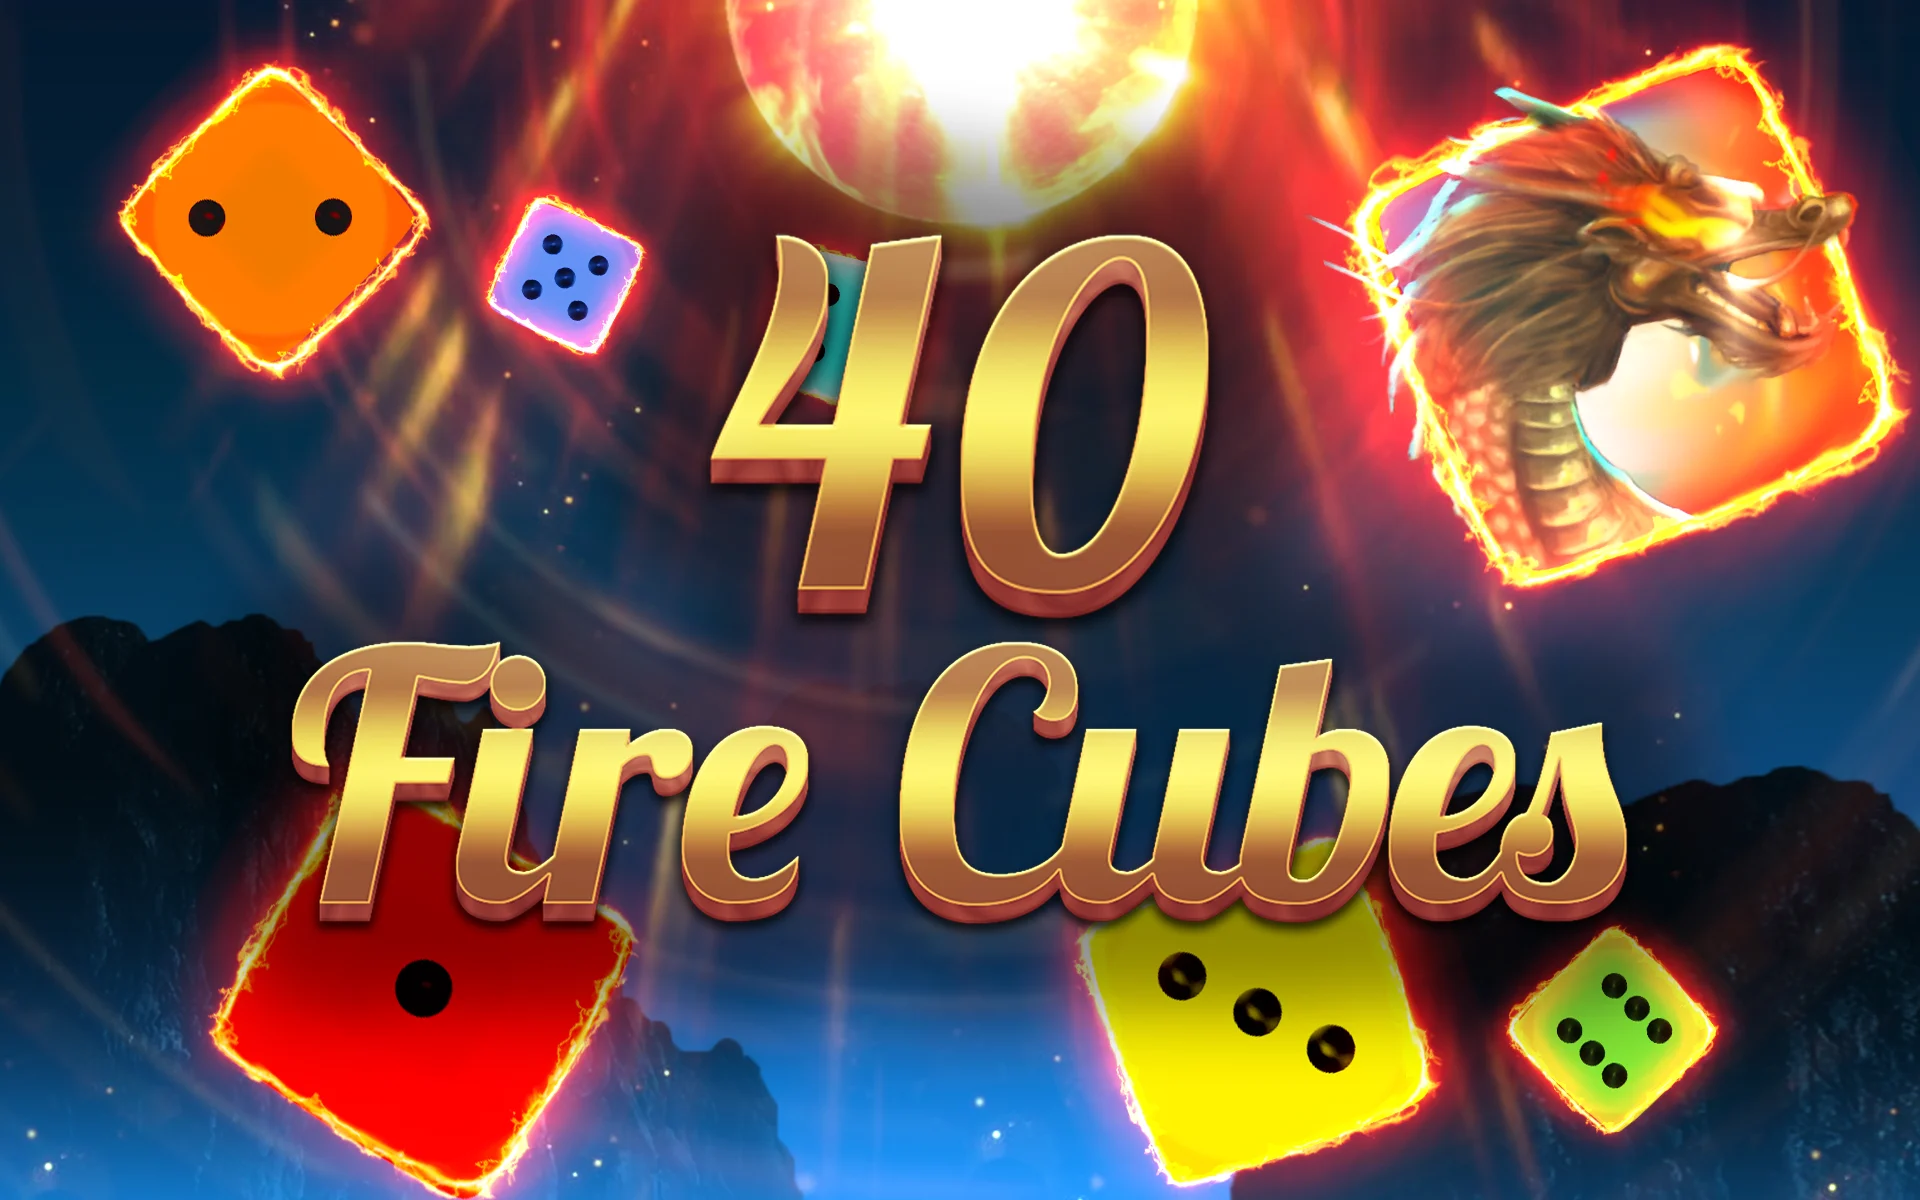 Играйте в 40 Fire Cubes в онлайн-казино Starcasino.be